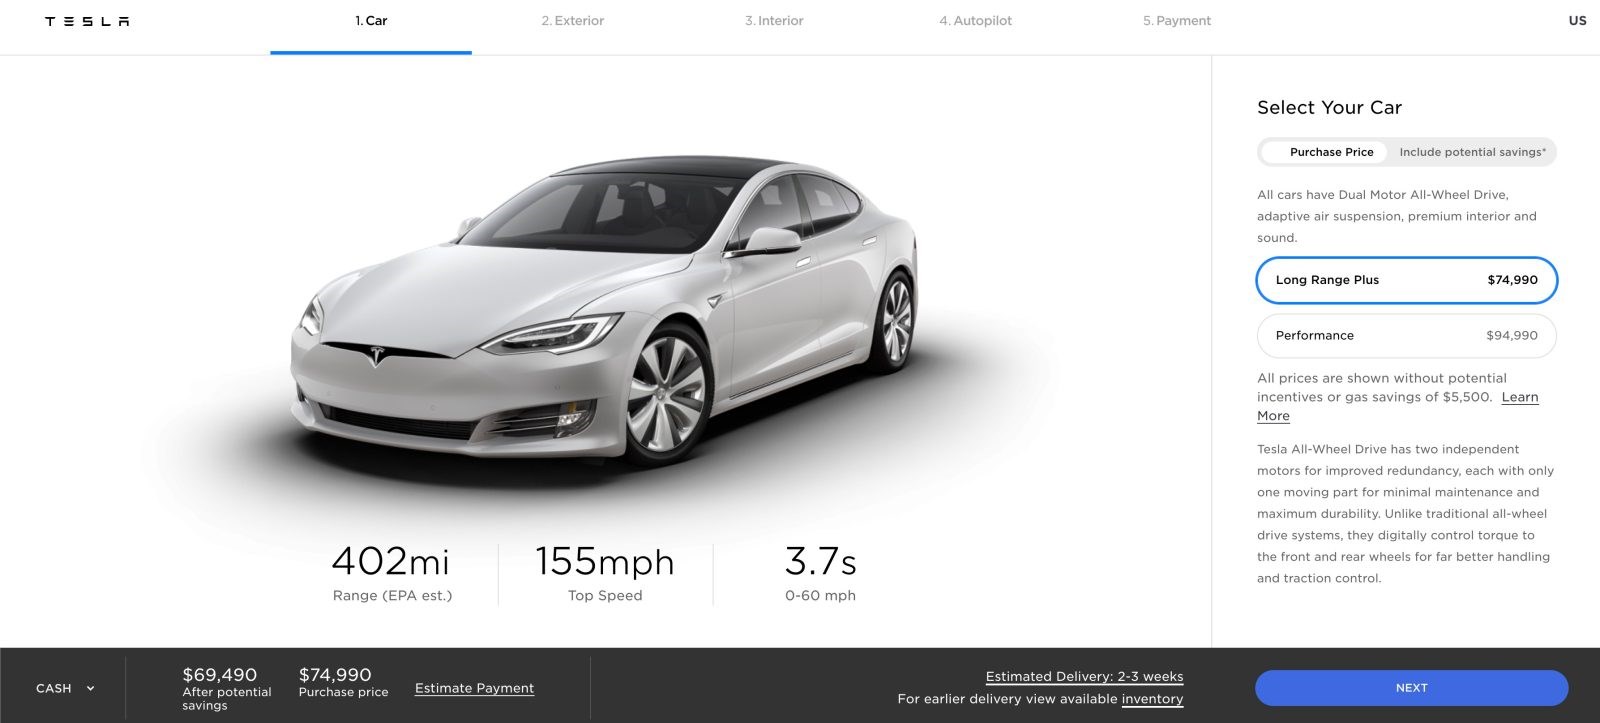 Tesla Model S, sunduğu 647 km’lik menzille alanında bir rekor kırdı